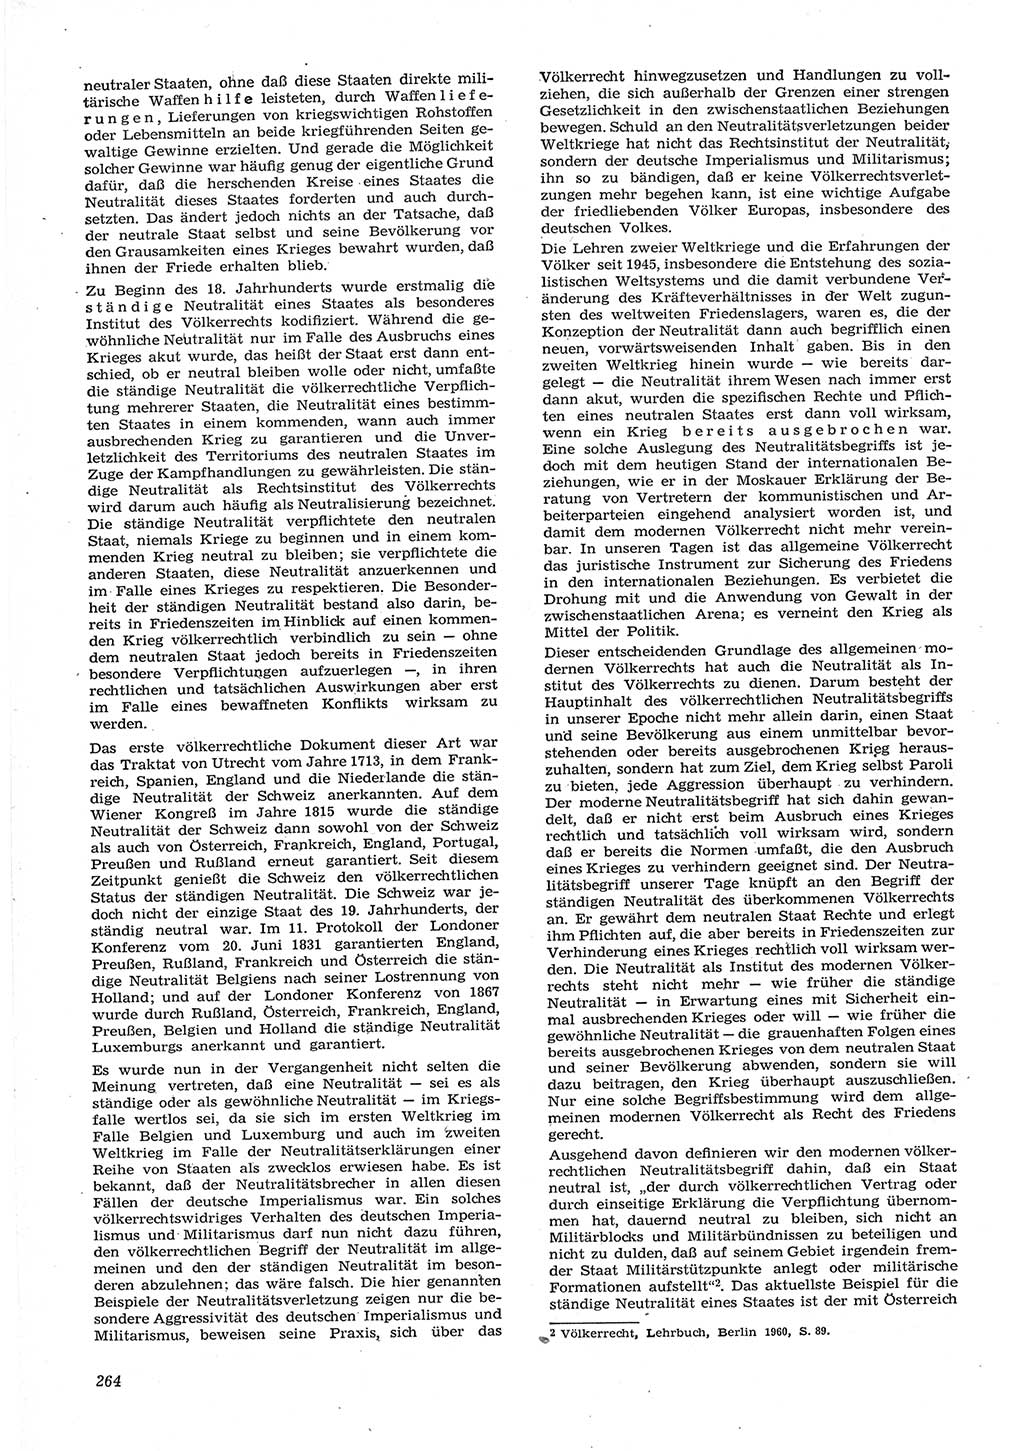 Neue Justiz (NJ), Zeitschrift für Recht und Rechtswissenschaft [Deutsche Demokratische Republik (DDR)], 15. Jahrgang 1961, Seite 264 (NJ DDR 1961, S. 264)